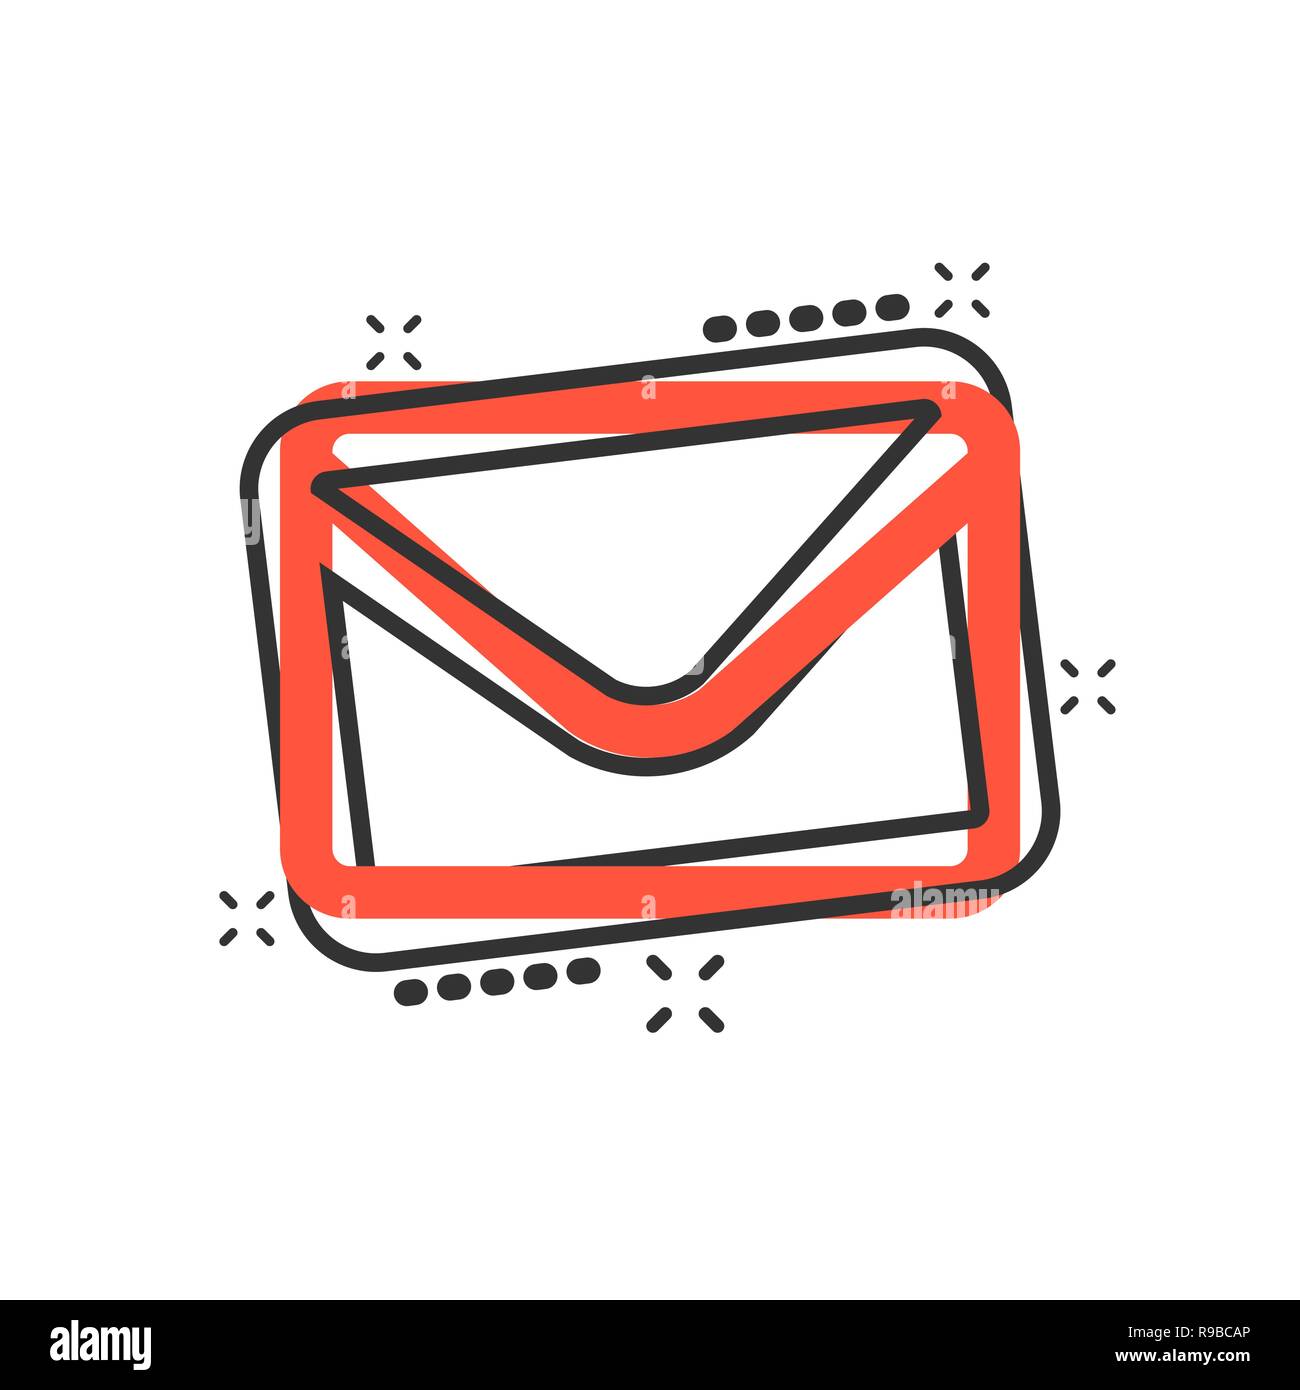 Mail Briefsymbol Im Comic Stil E Mail Schreiben Spam Vektor Cartoon Illustration Piktogramm Erhalten Geschaftsfeld Brief Kommunikation Konzept Splash Wirkung Stock Vektorgrafik Alamy